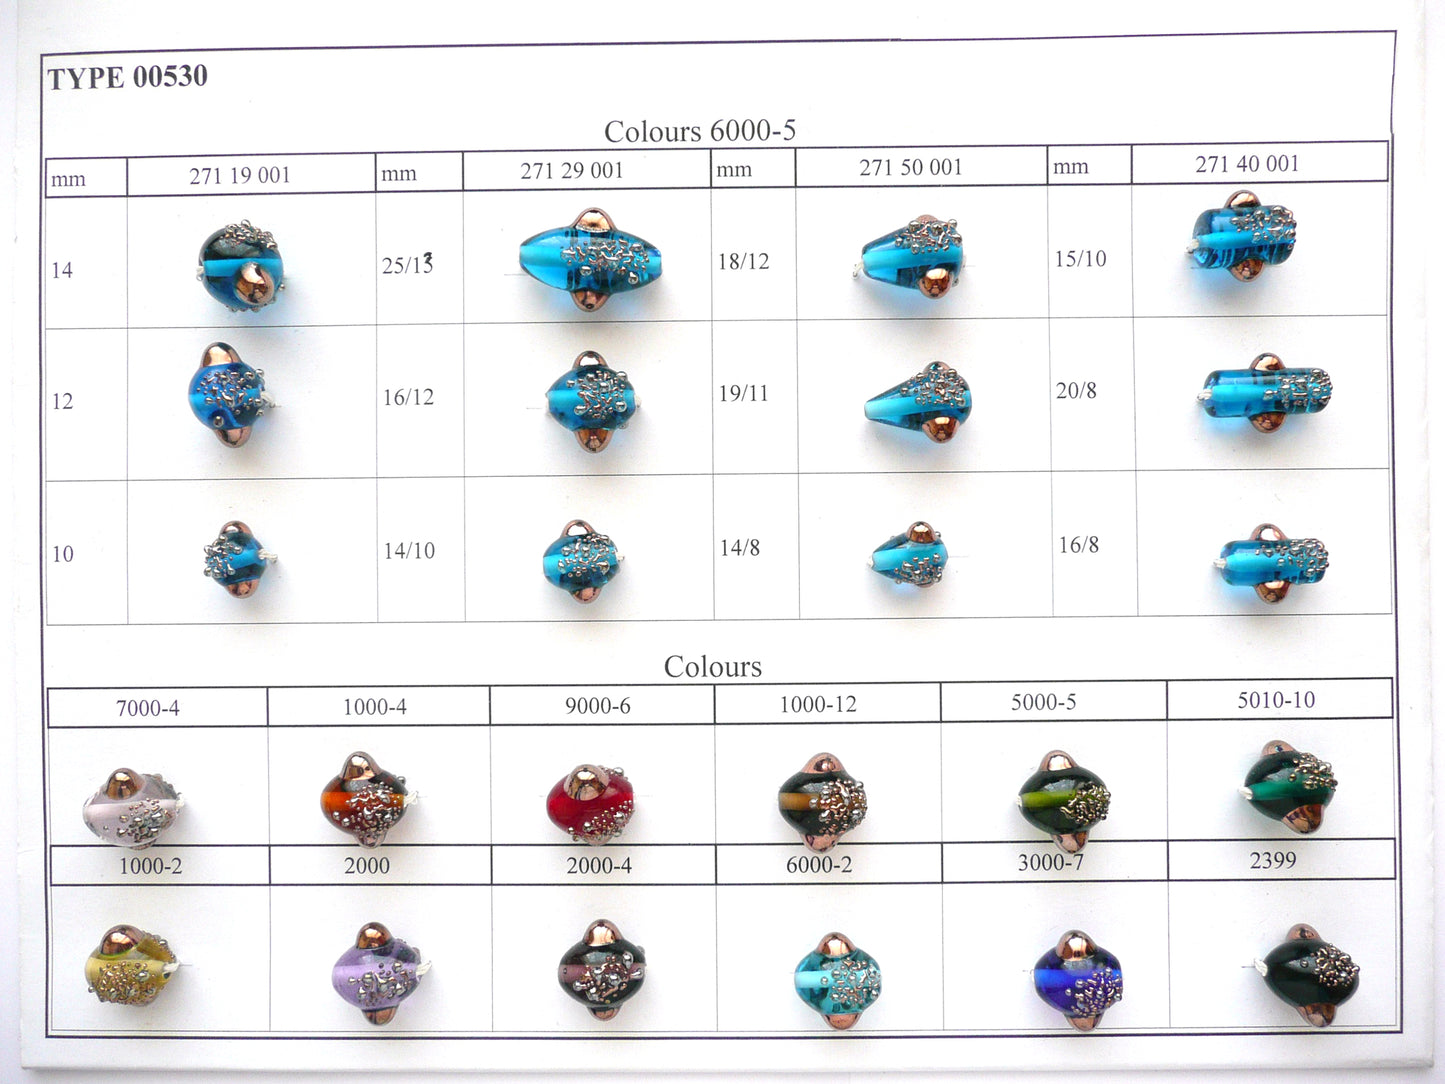 30 pcs Lampwork Beads 530 / Cylinder (271-40-001), Handmade, Preciosa Glass, Czech Republic